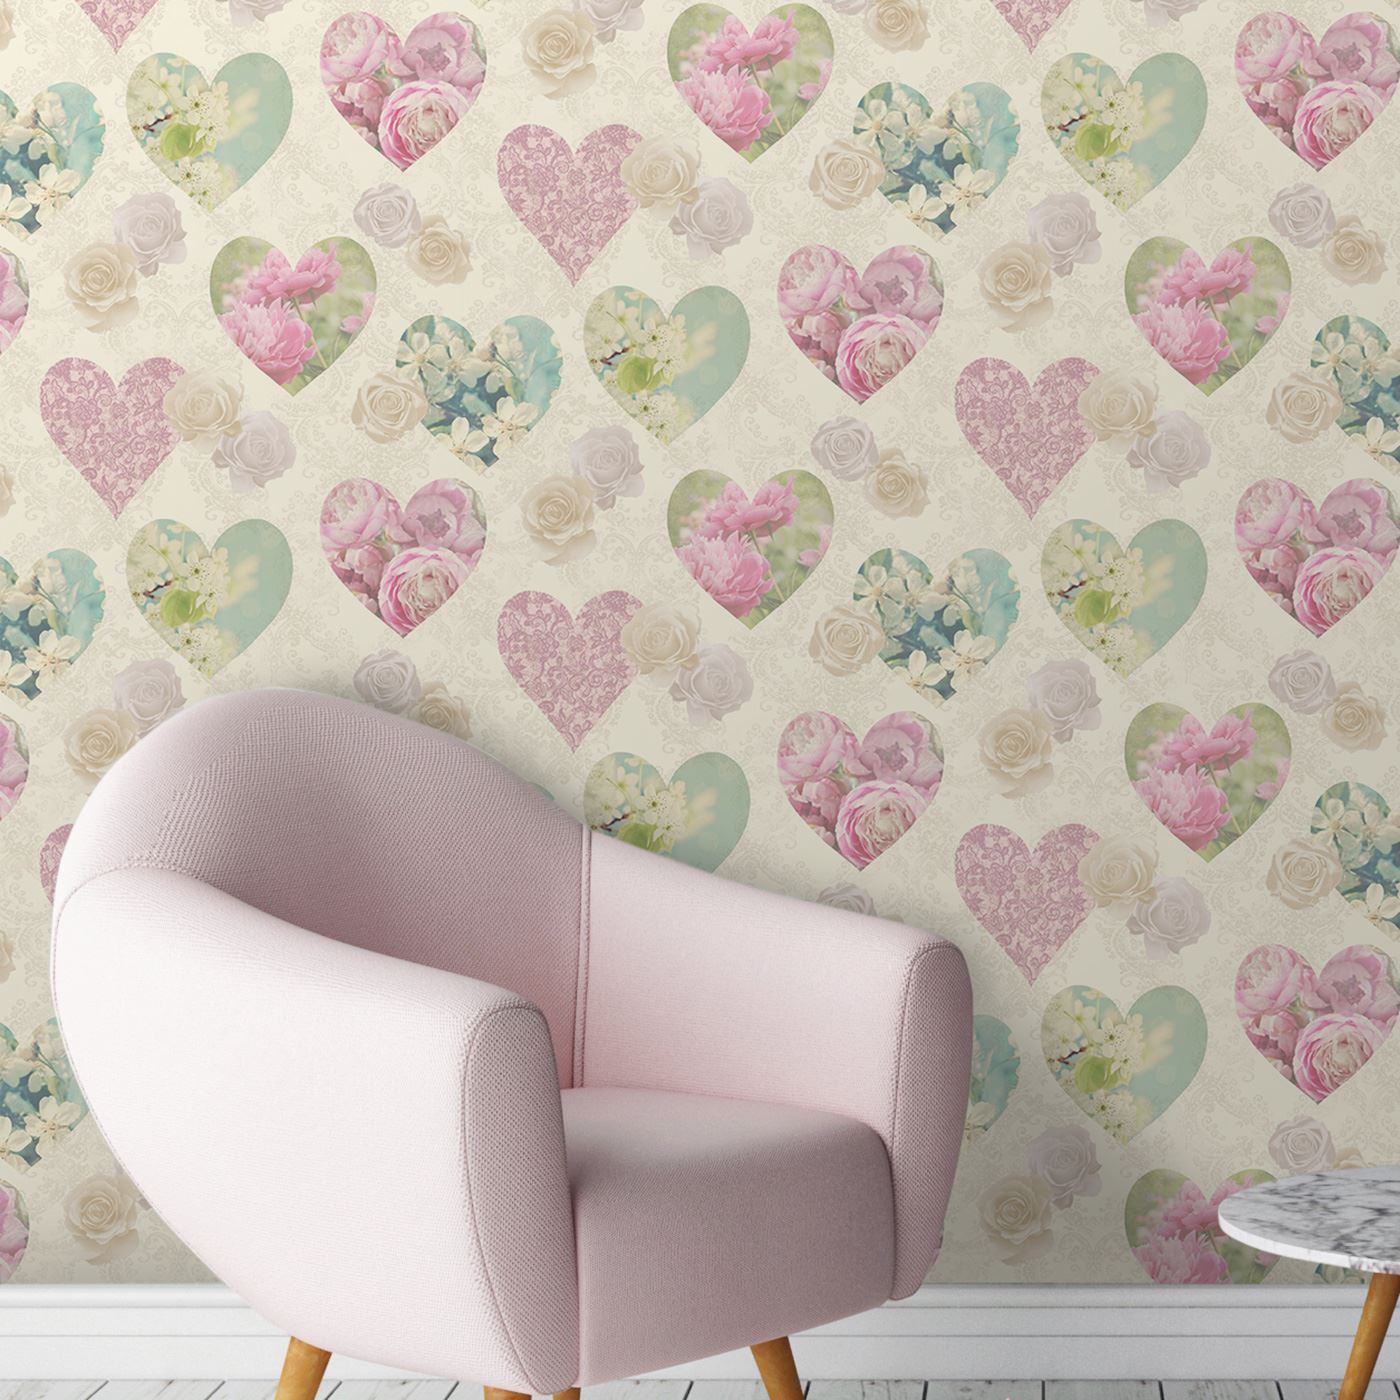 Heart Themed Wallpaper Girls Bedroom Pink Various Designs - Fine Decor Novelty Heart - HD Wallpaper 